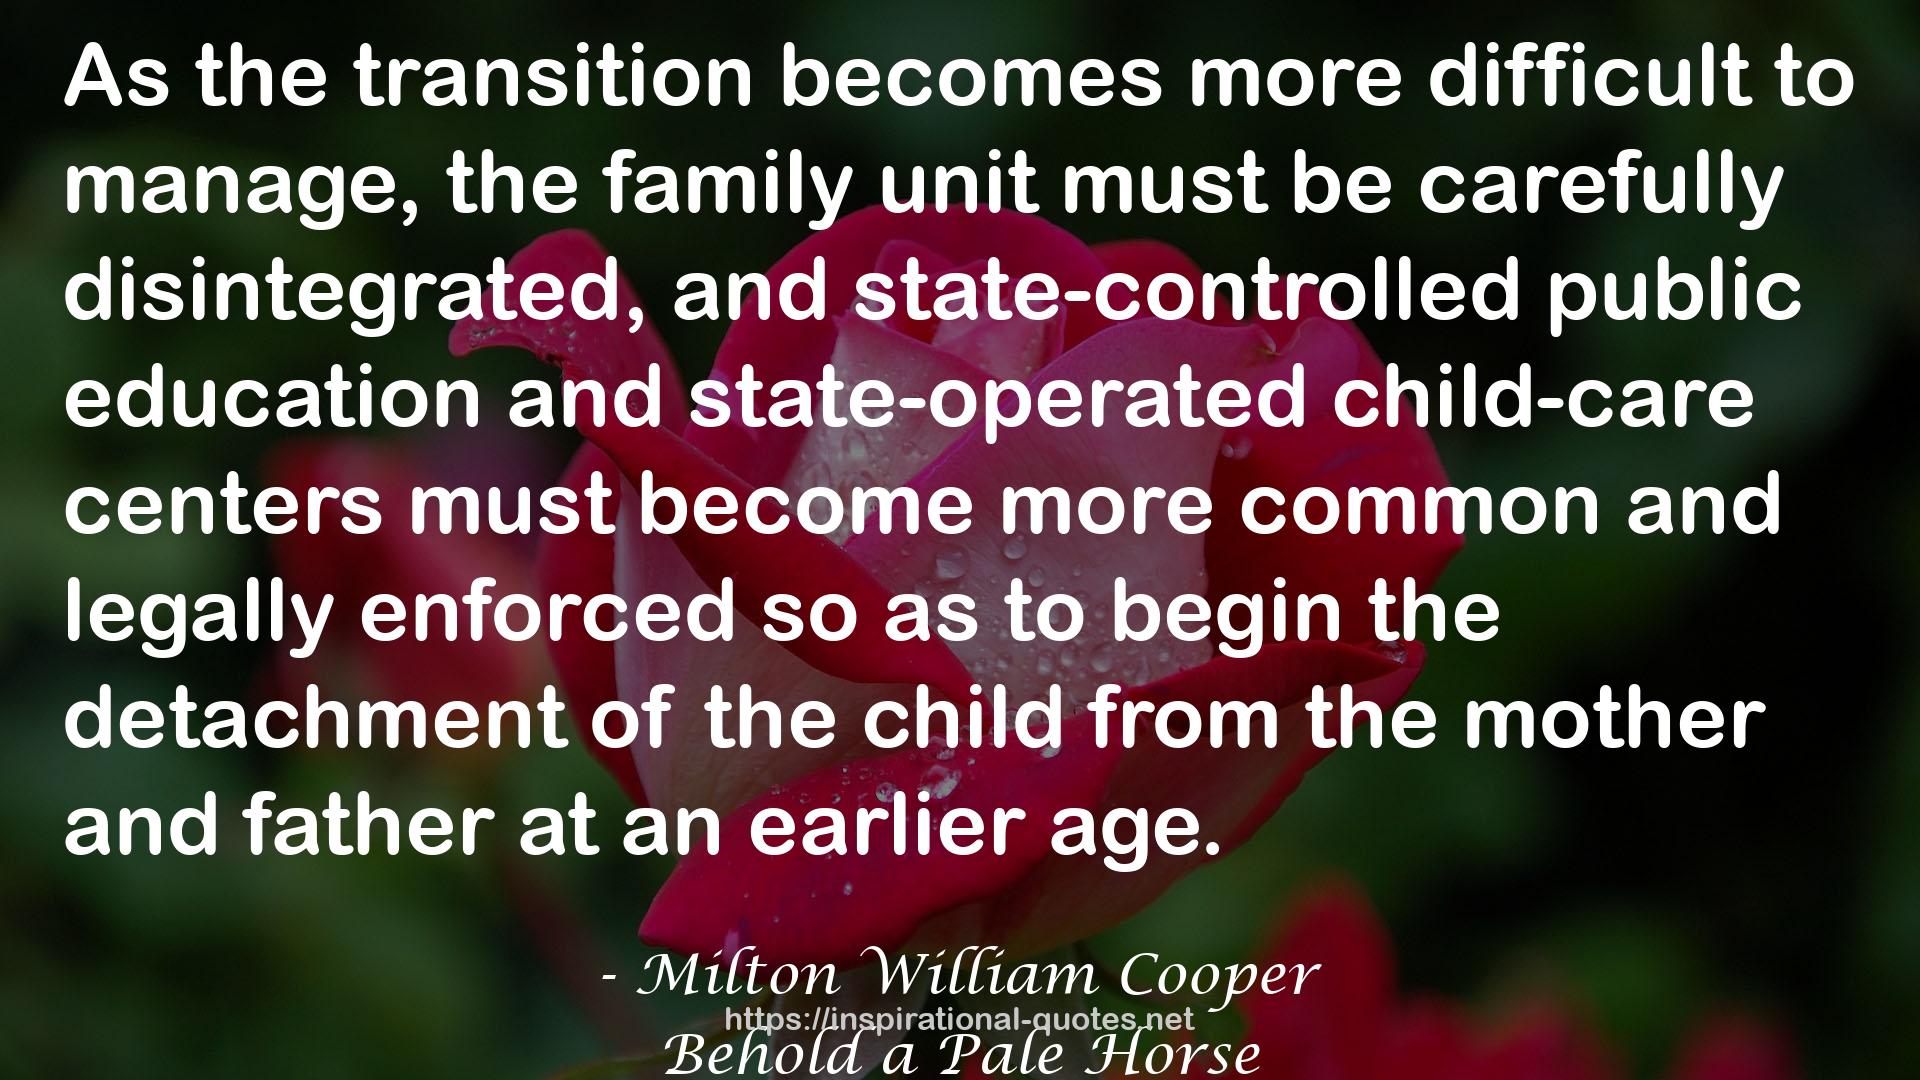 Milton William Cooper QUOTES